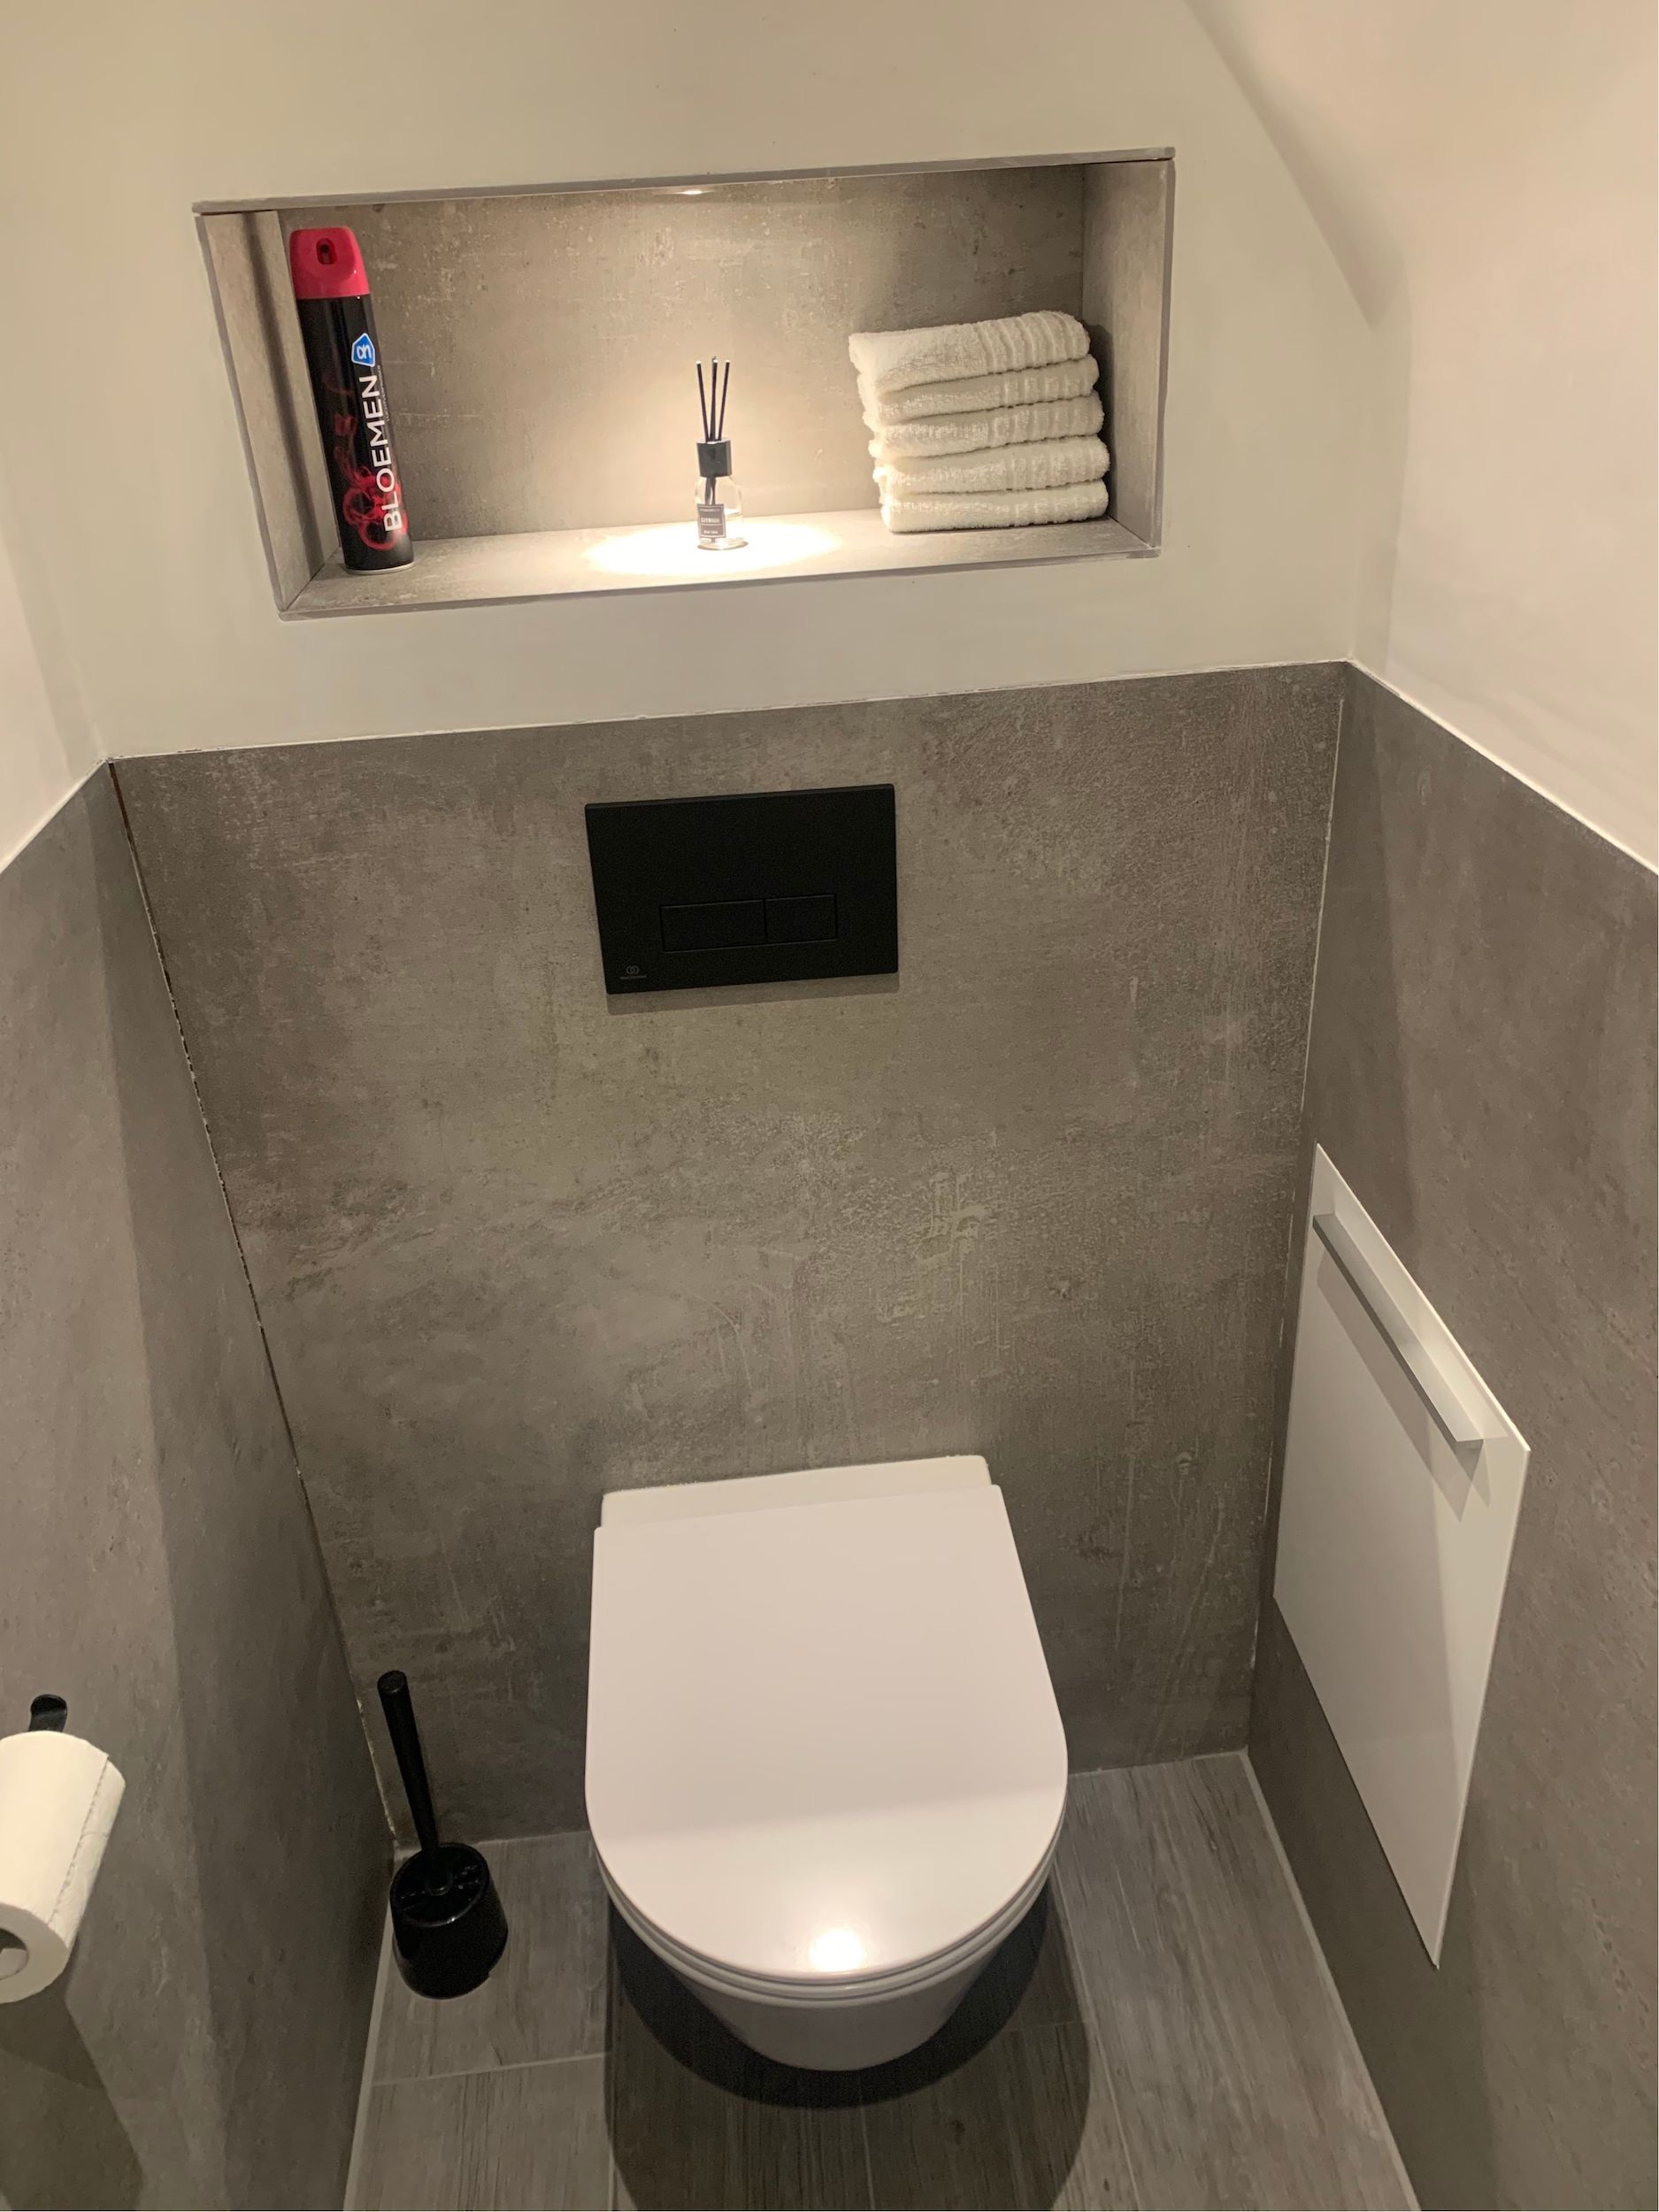 Bizot Installatietechniek – Project toilet verbouwing 2021 4